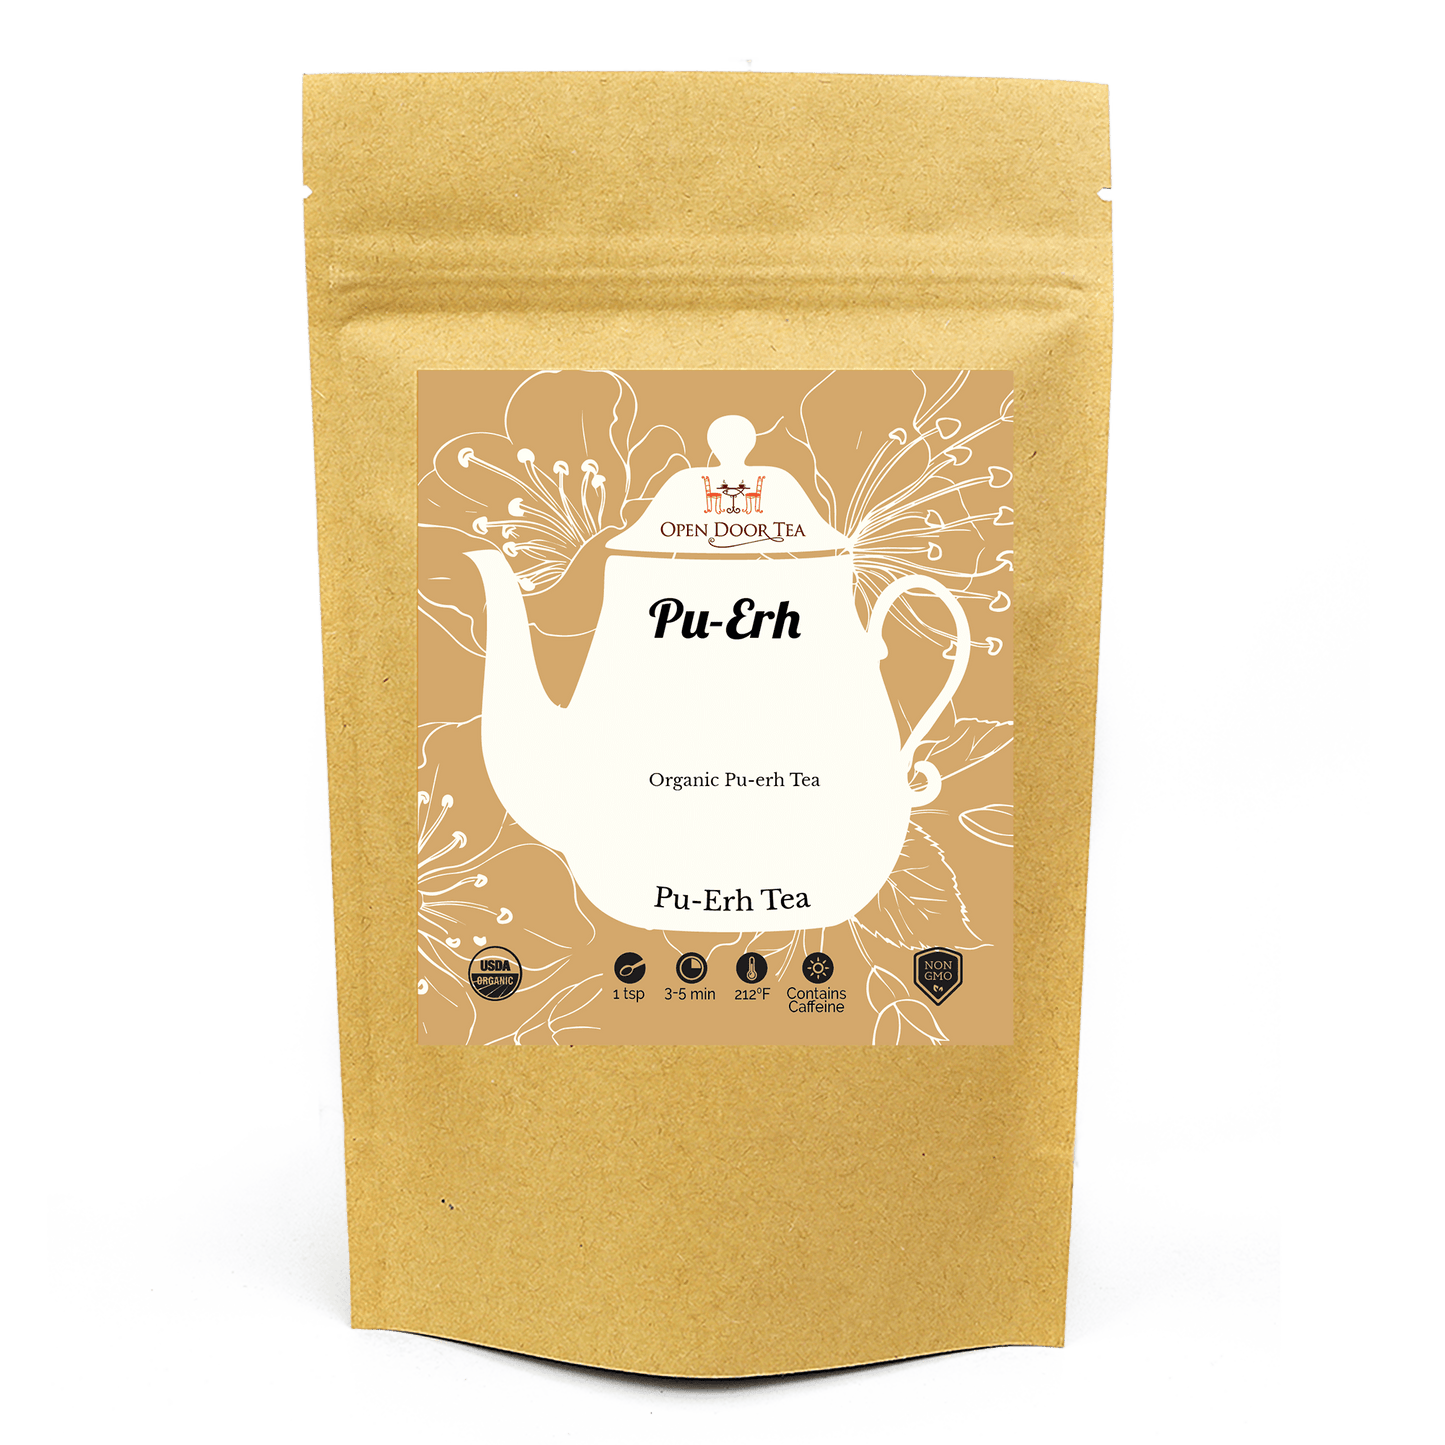 Pu-Erh by Open Door Tea